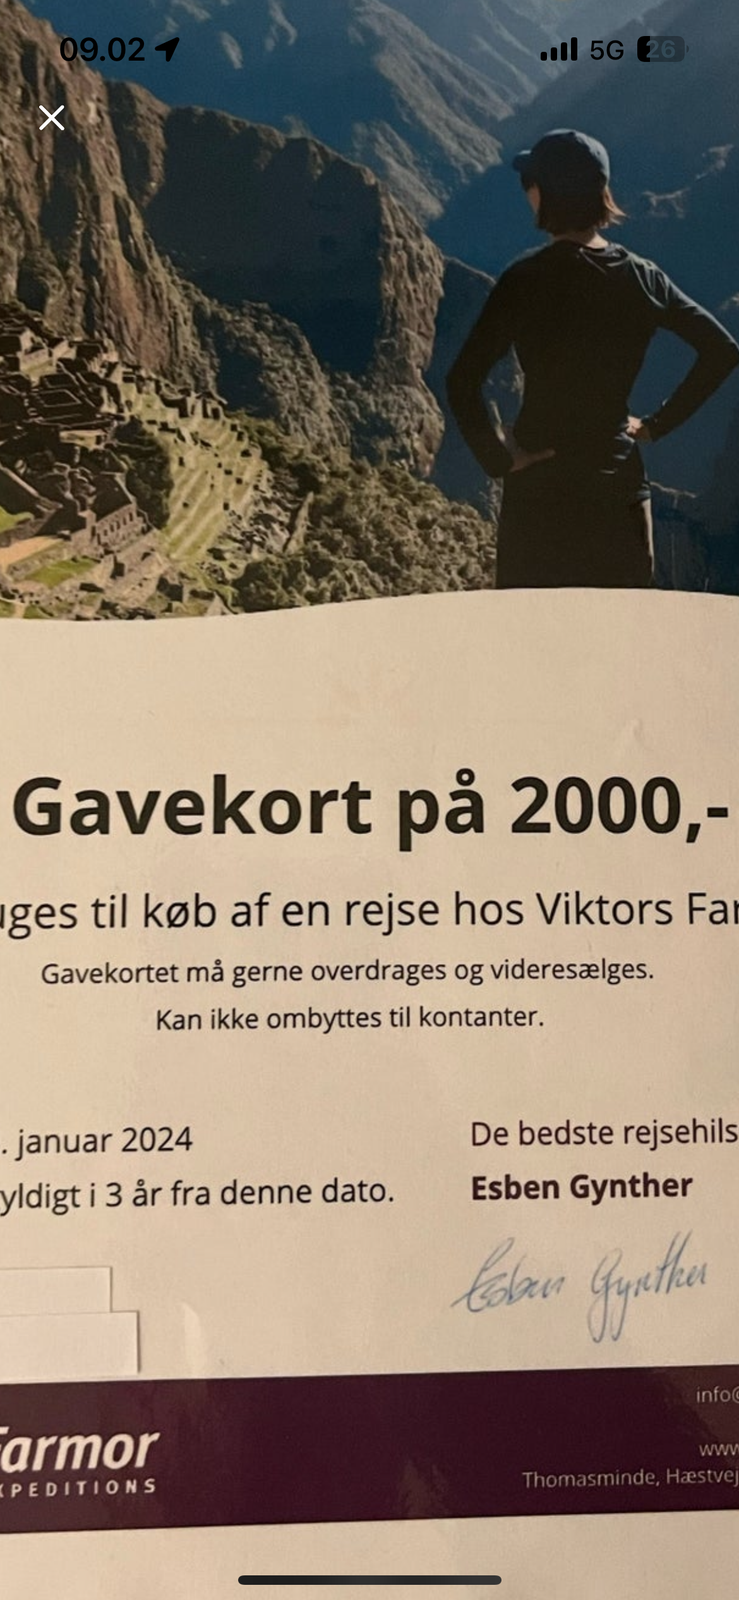 Viktors Farmor rejser Gavekort på 2000 kr

SÆ...